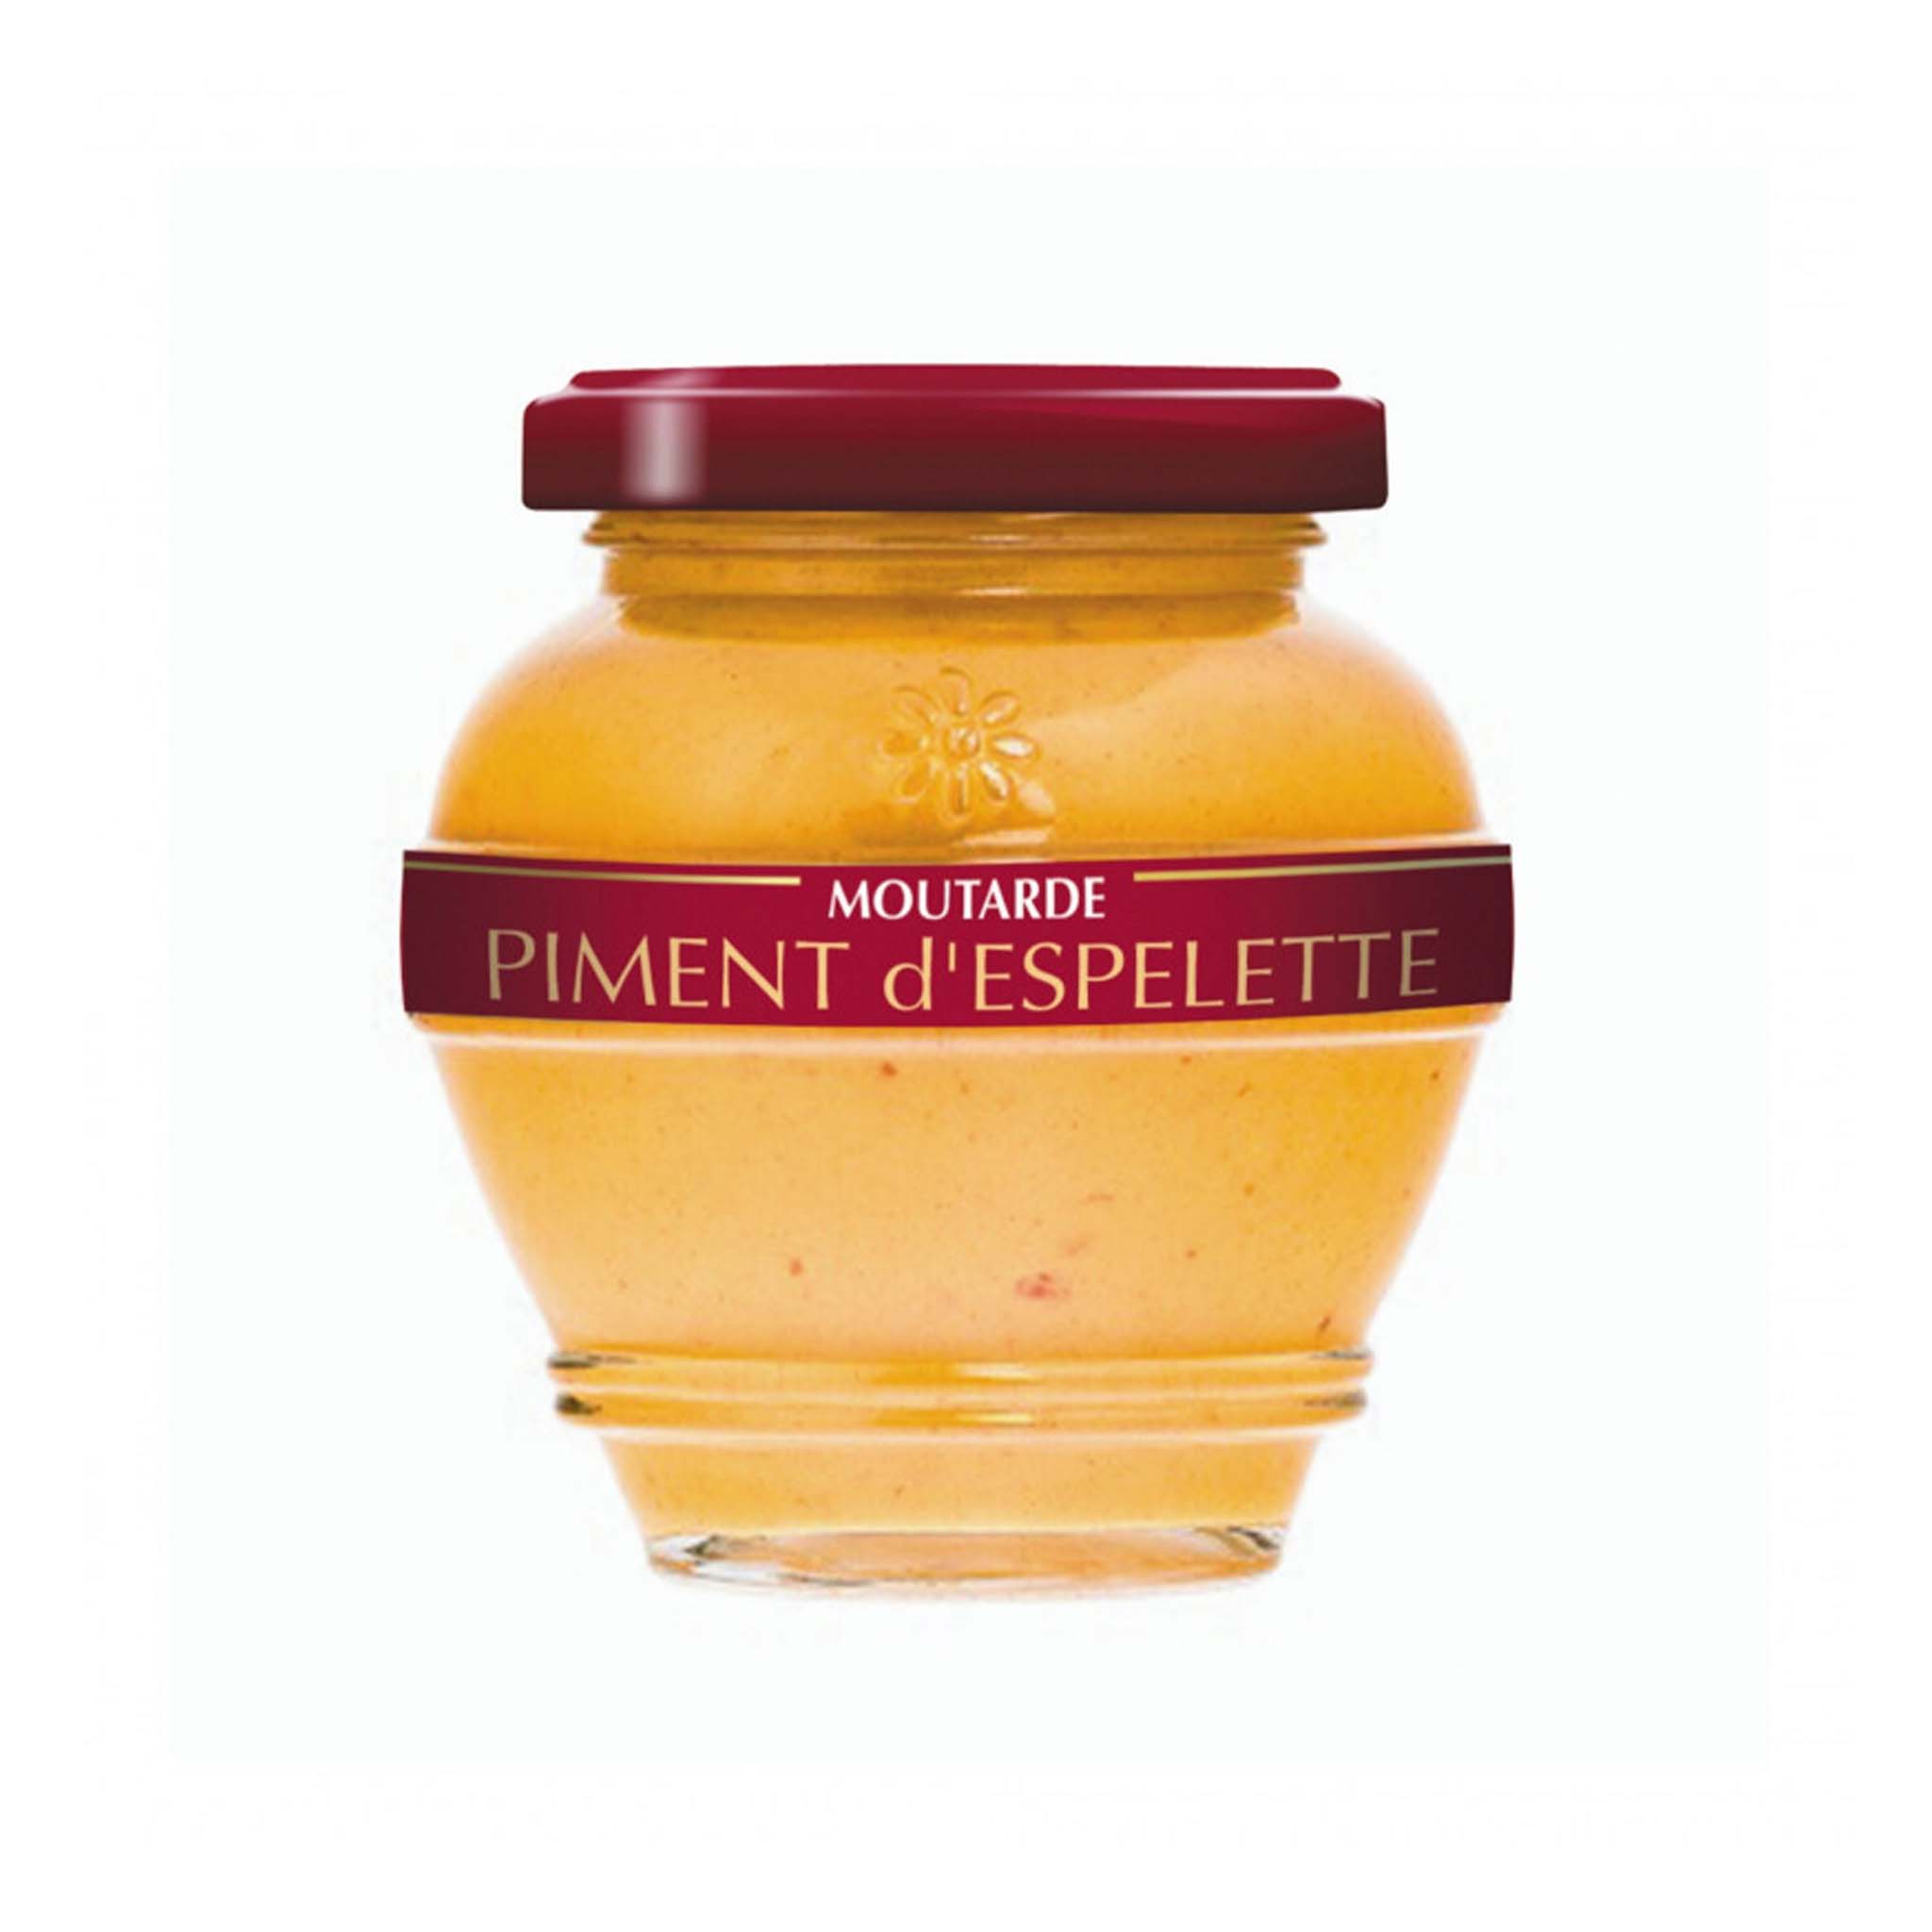 Domaine des Terres Rouges Piment Espelette Mustard 